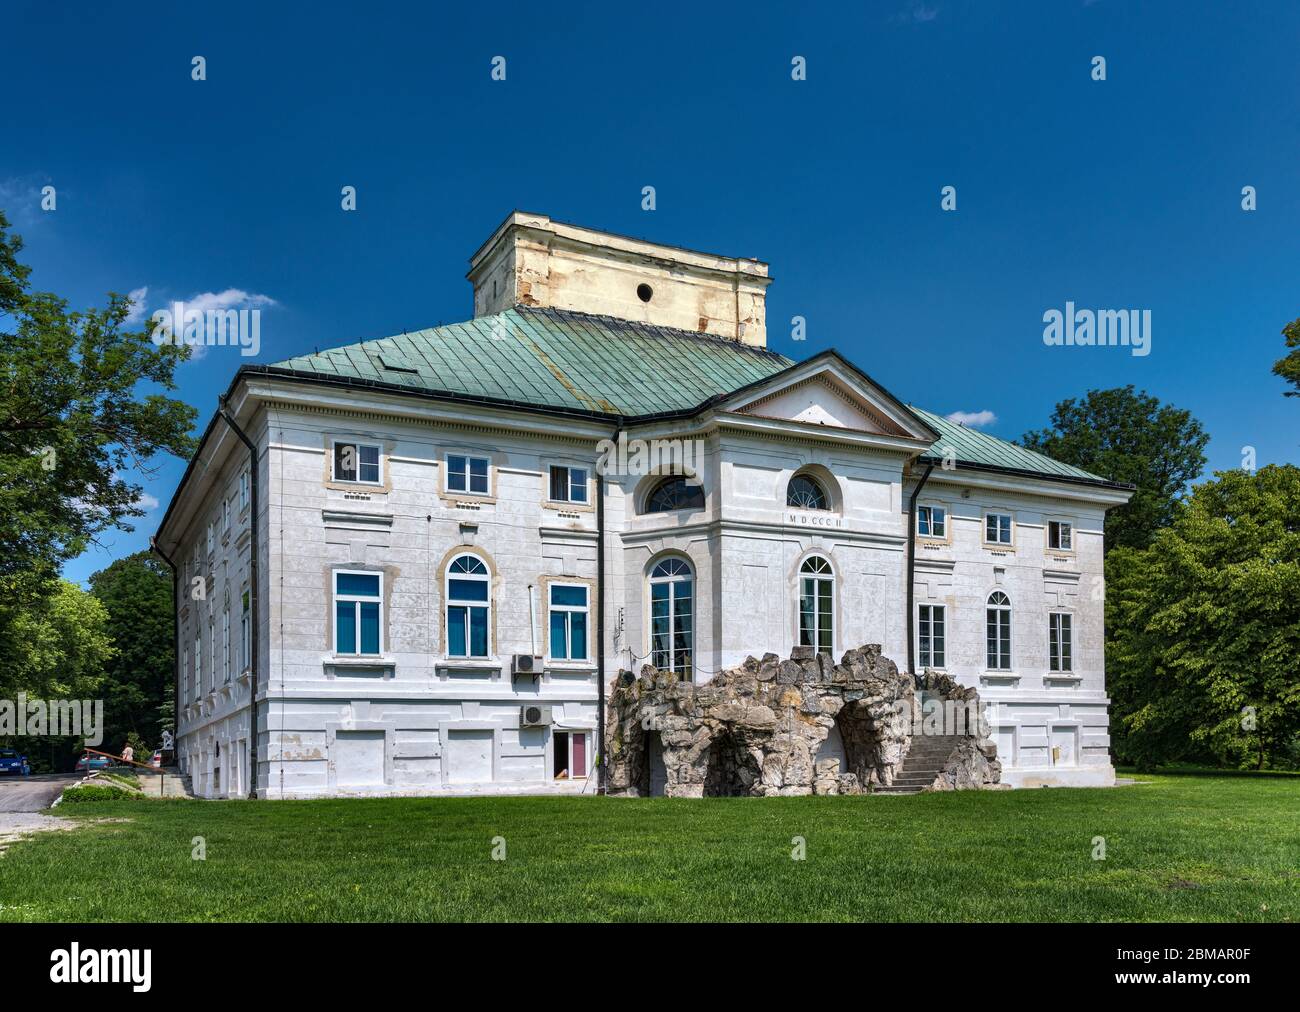 Palazzo neoclassico, costruito nel 1802, ora una casa cittadina senior nel villaggio di Bejsce, Malopolska aka regione della Lesser Poland, Polonia Foto Stock